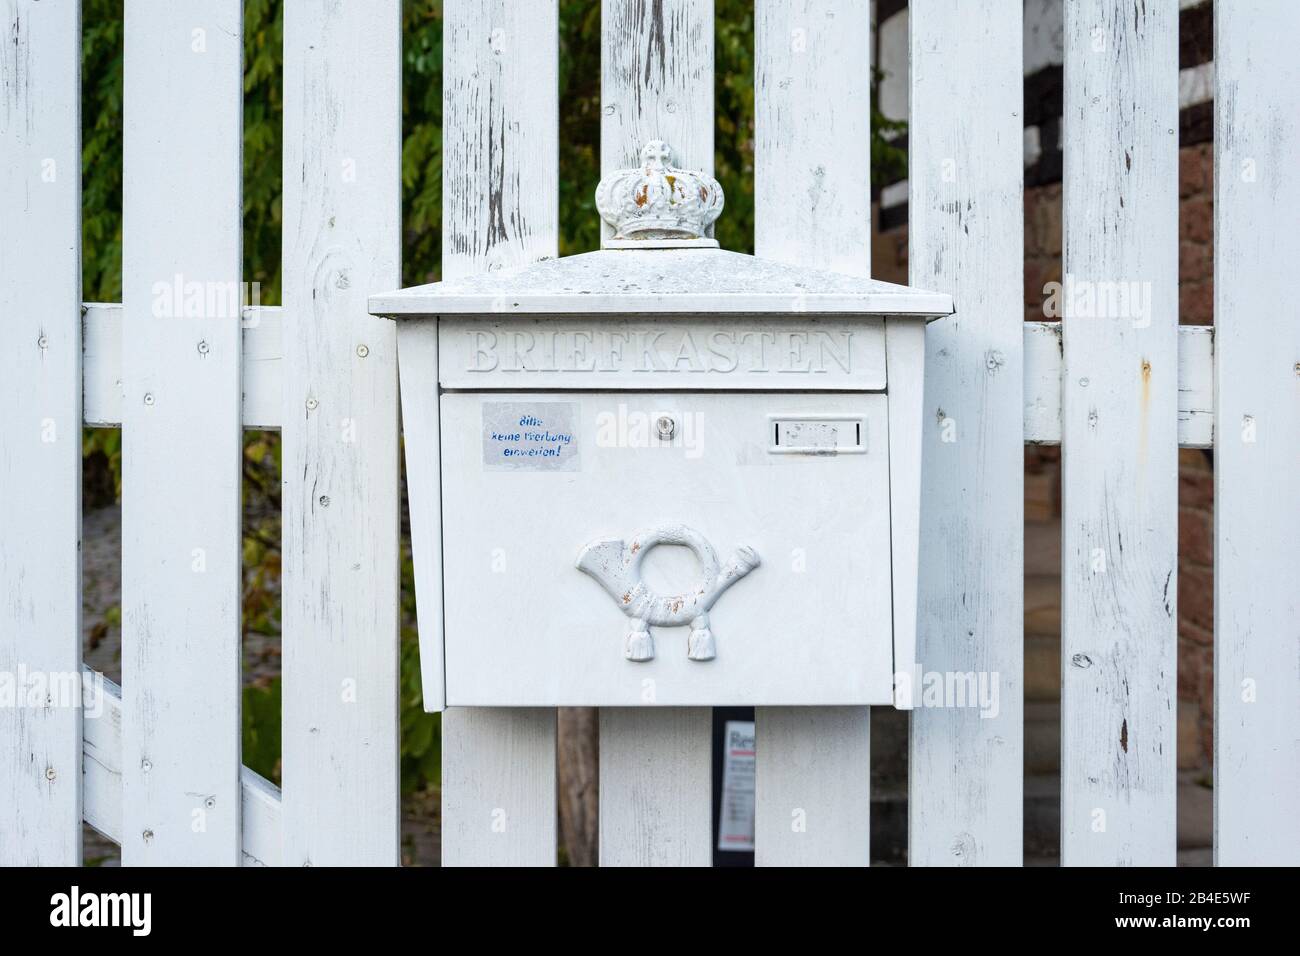 Germany, Rheinlandpfalz, Gleiszellen-Gleishorbach, mailbox at a garden gate. Stock Photo